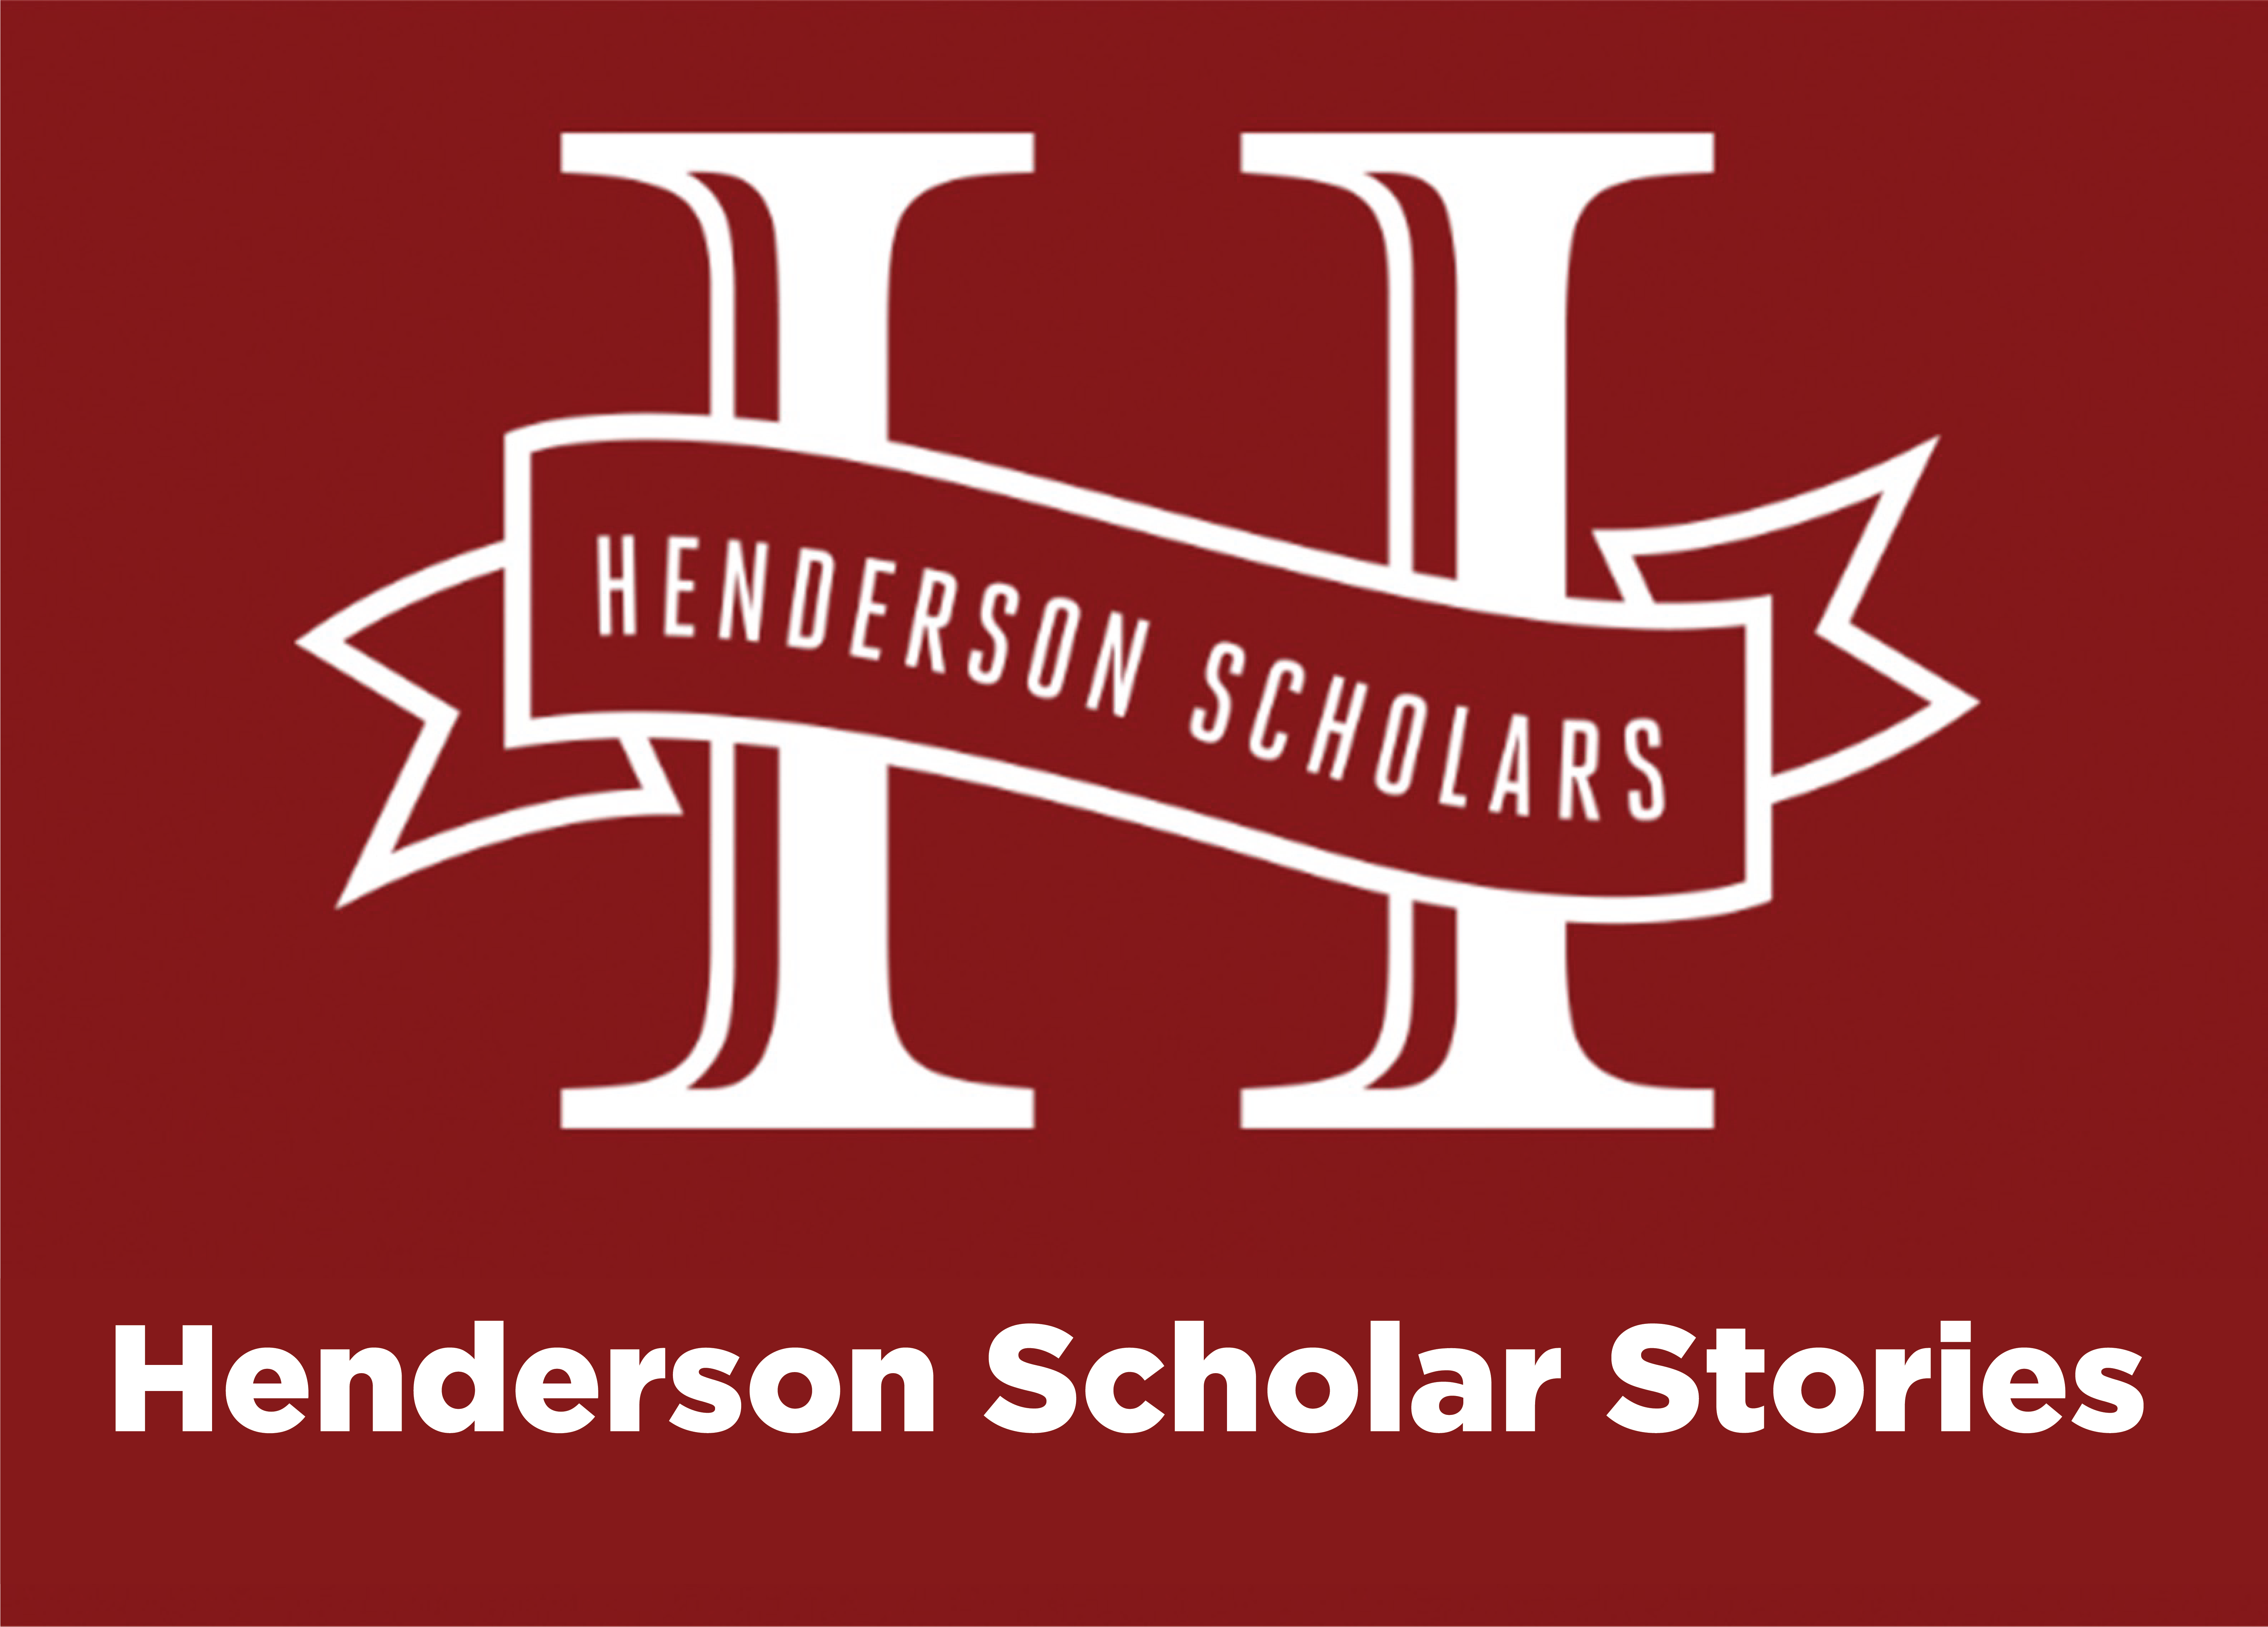 Henderson Scholars logo with Henderson Scholar Stories written below on a crimson background. 